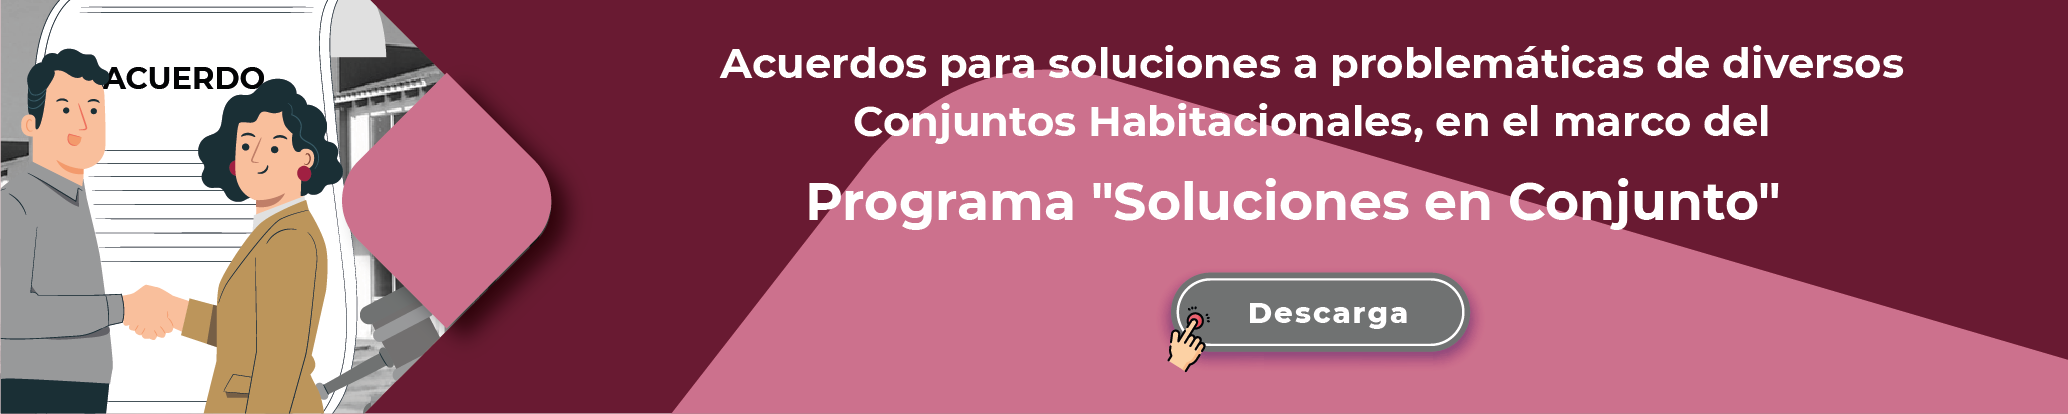 Acuerdos para soluciones a problemáticas de diversos Conjuntos Habitacionales, en el marco del Programa Soluciones en Conjunto, descarga